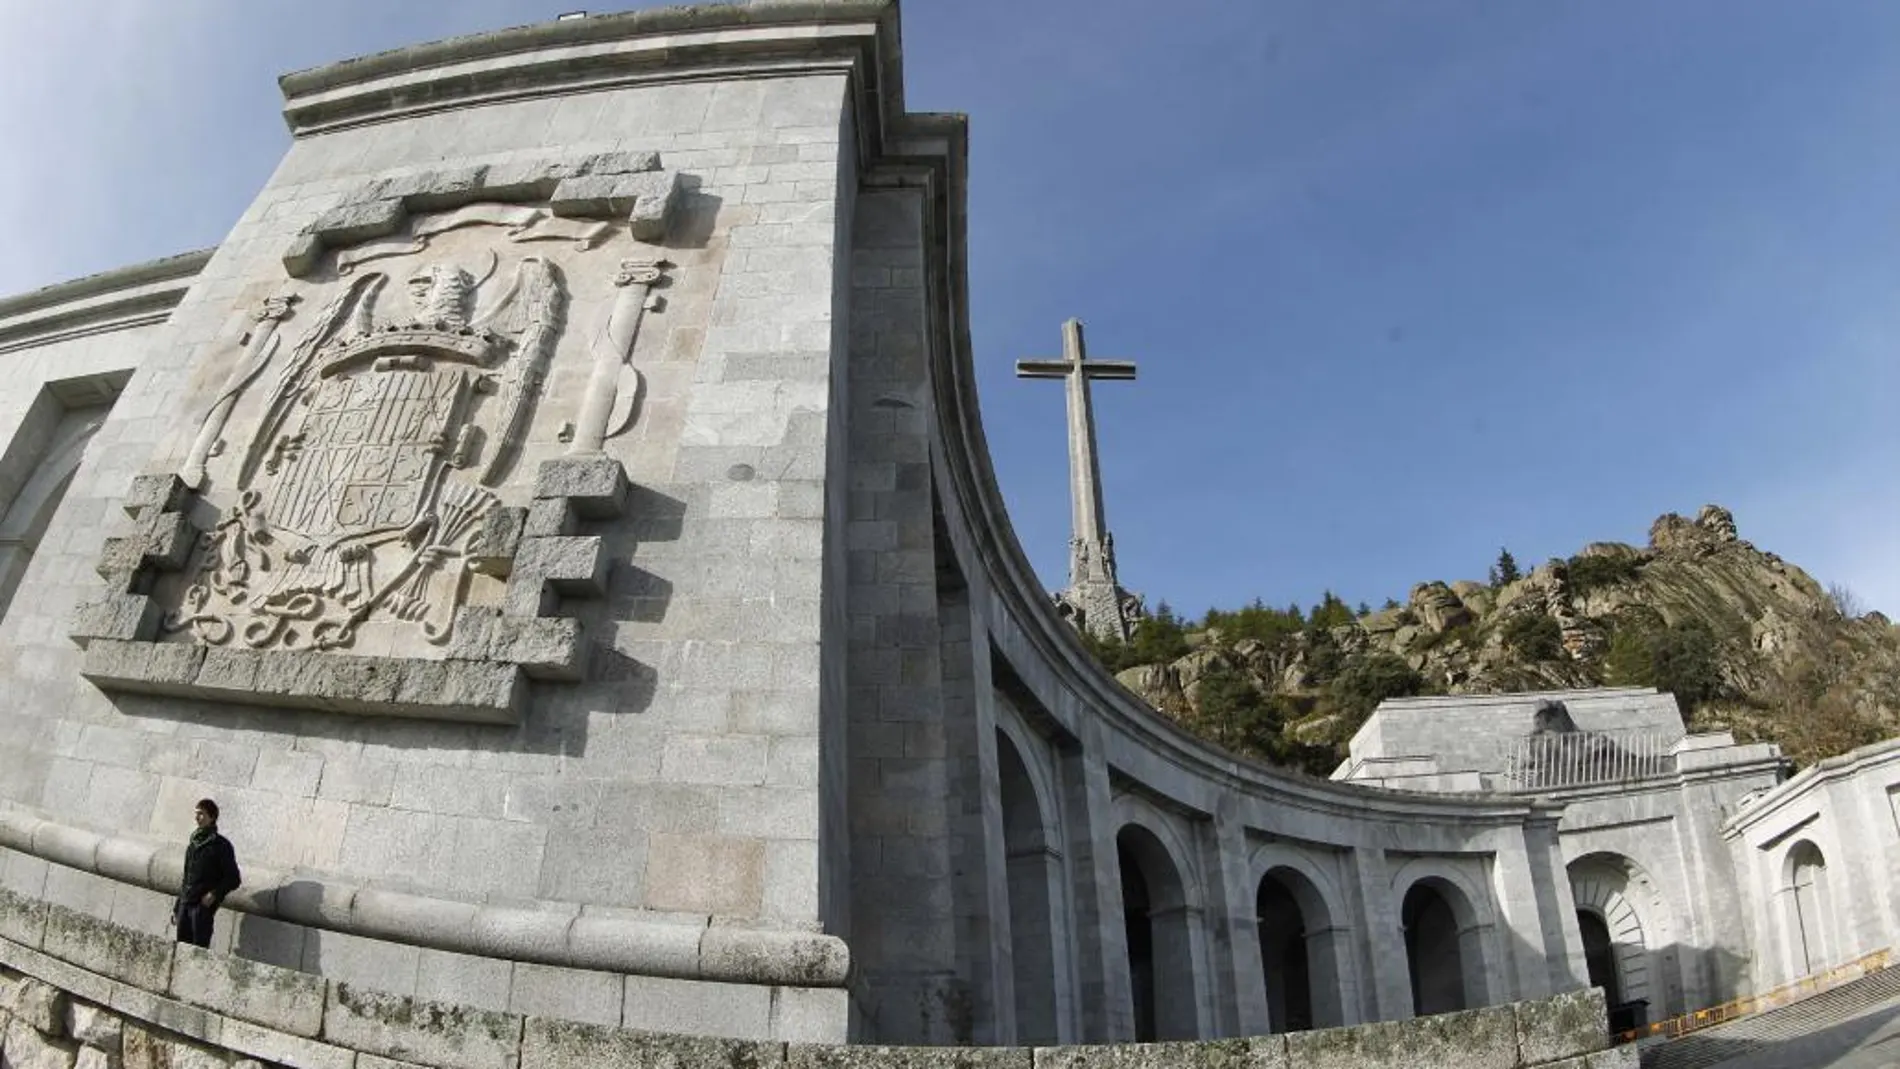 Vista general del Valle de los Caídos lugar donde está enterrado el dictador Francisco Franco.